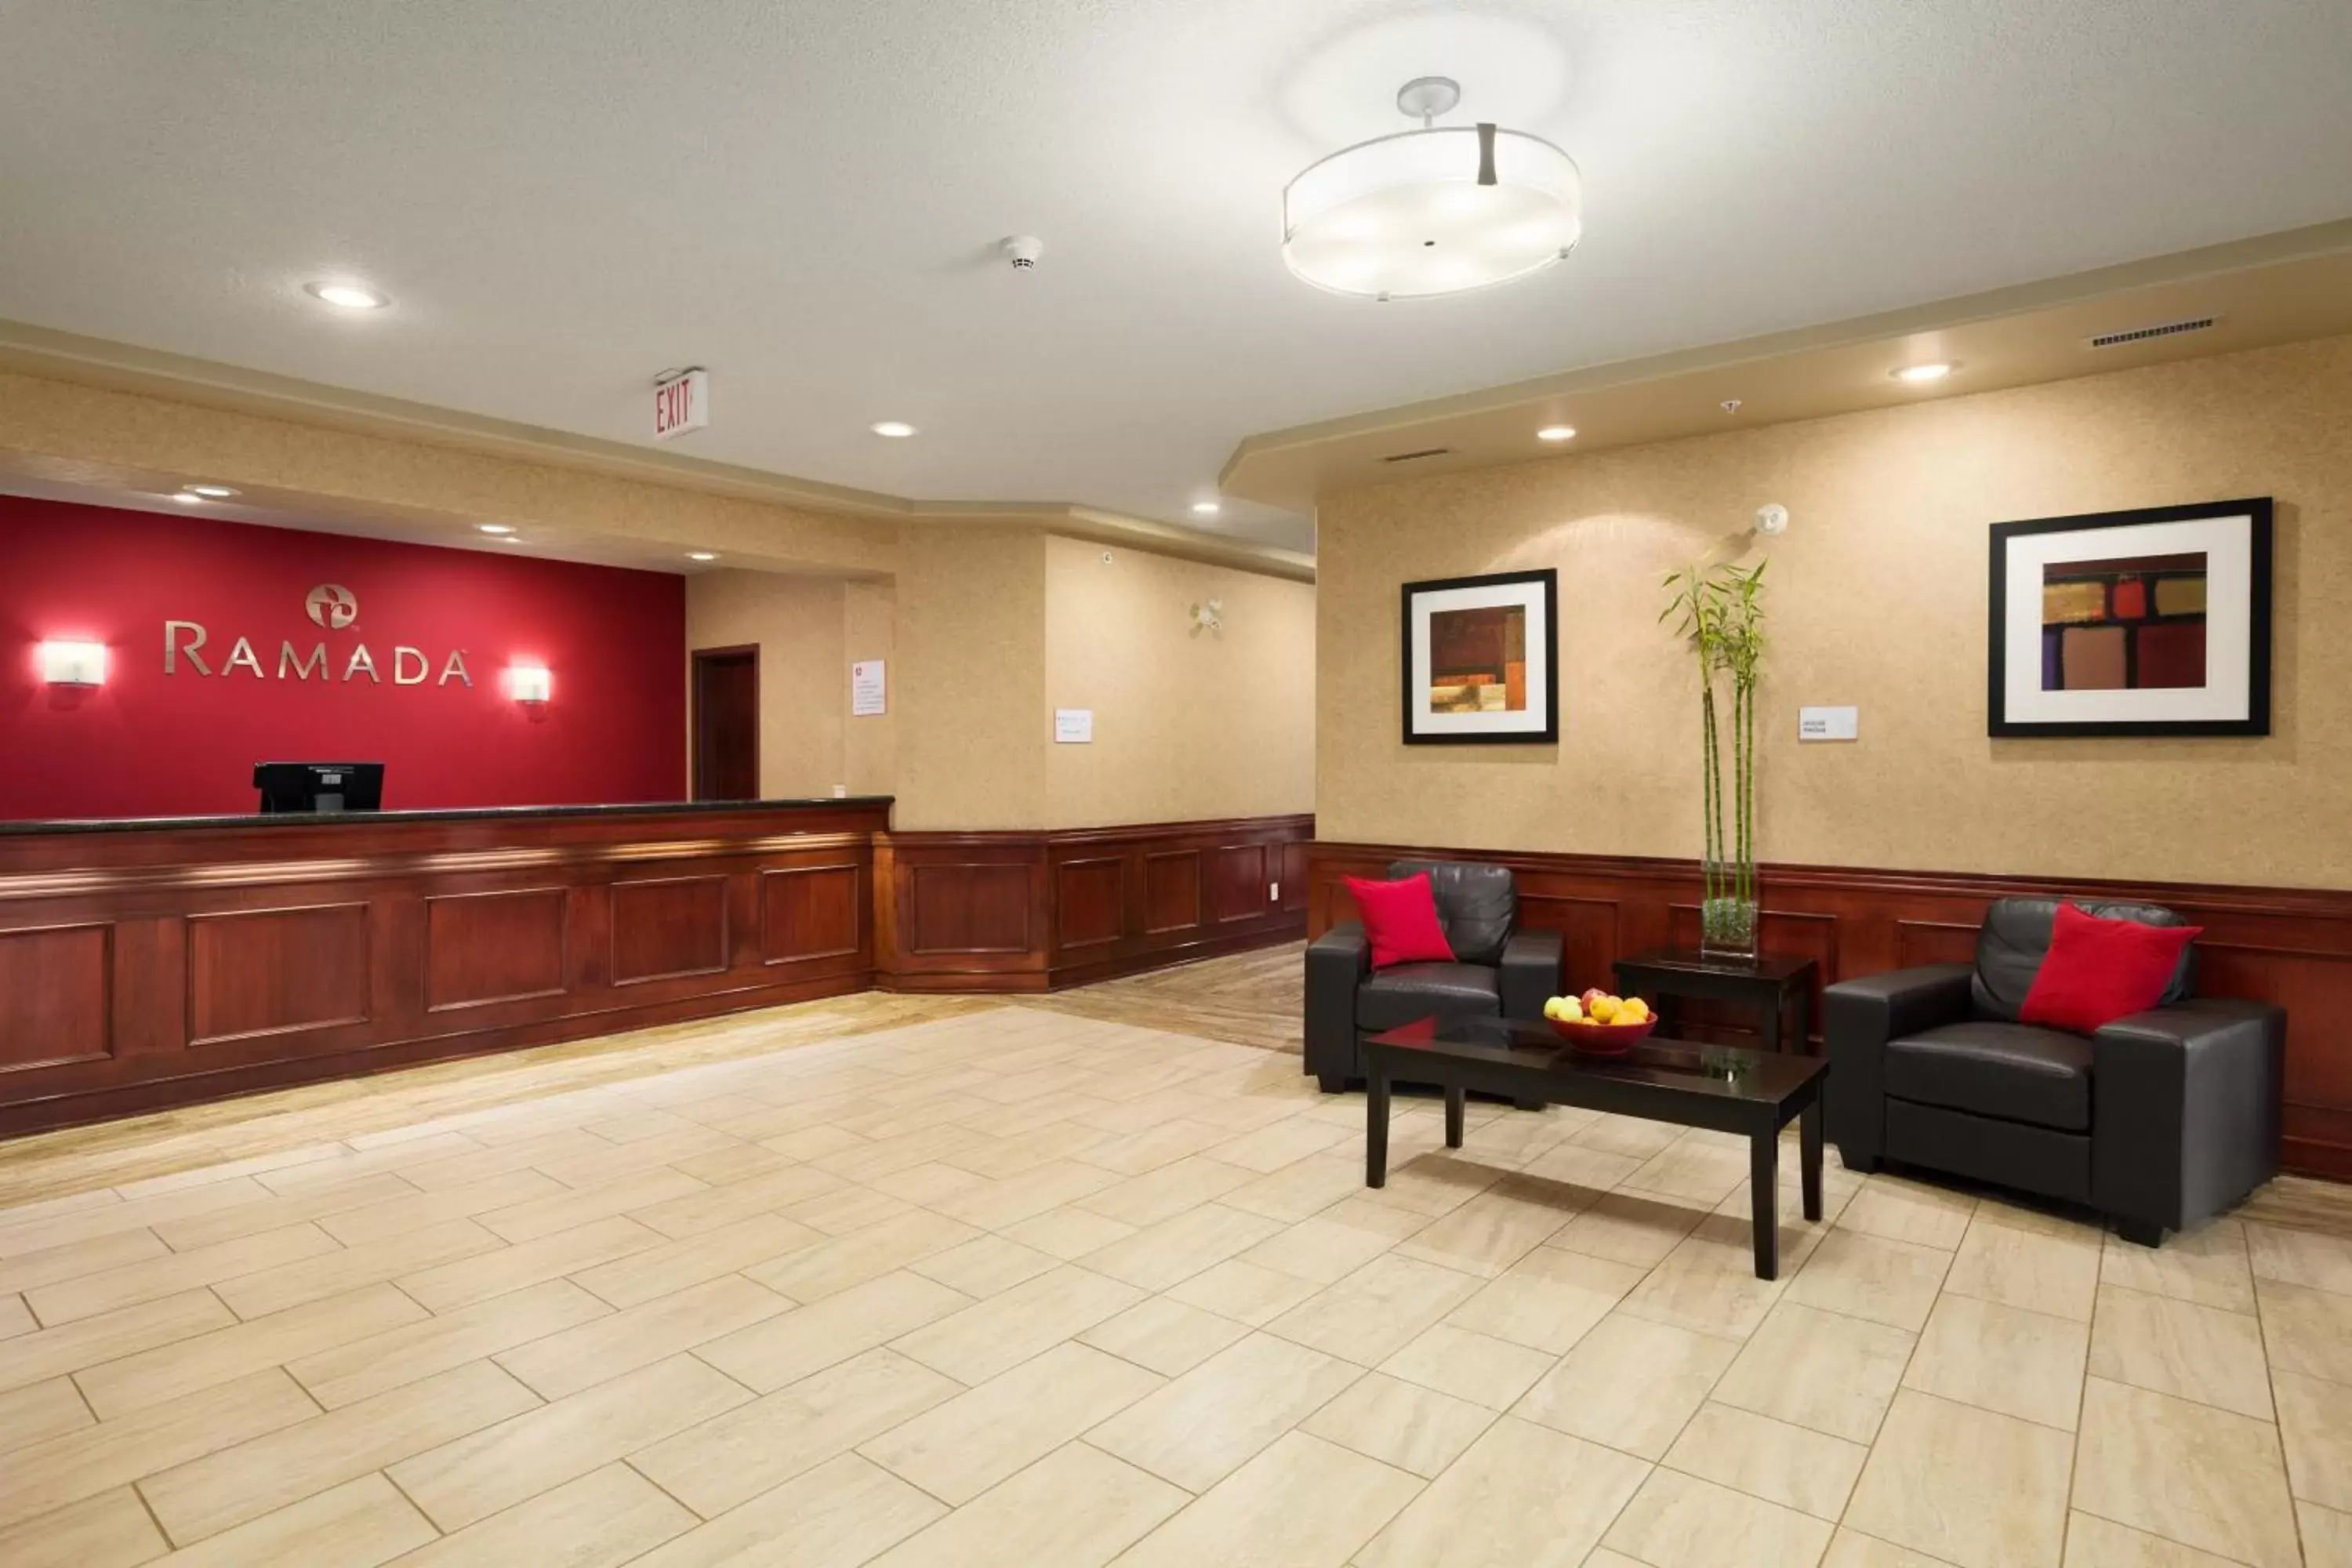 Lobby or reception, Lobby/Reception in Ramada by Wyndham Edson